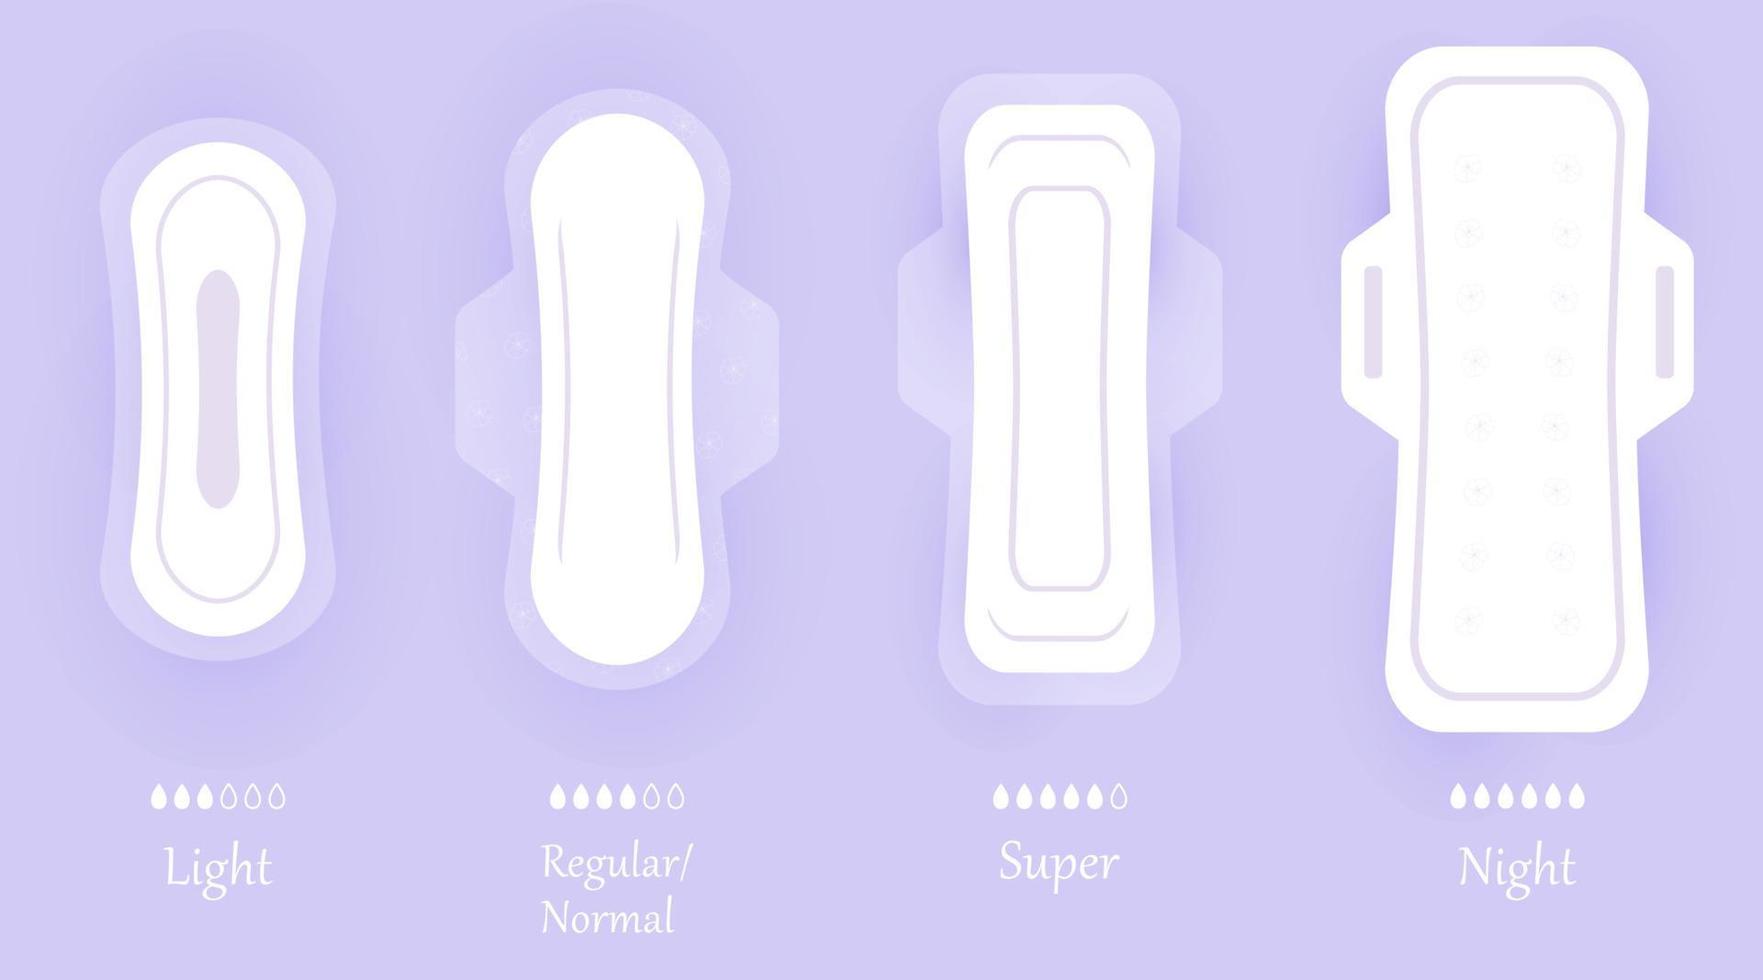 assorbenti igienici per donne. set di icone vettoriali isolate su sfondo viola con ombra. diverse misure di assorbenti igienici femminili. elementi per l'igiene personale in stile piatto.